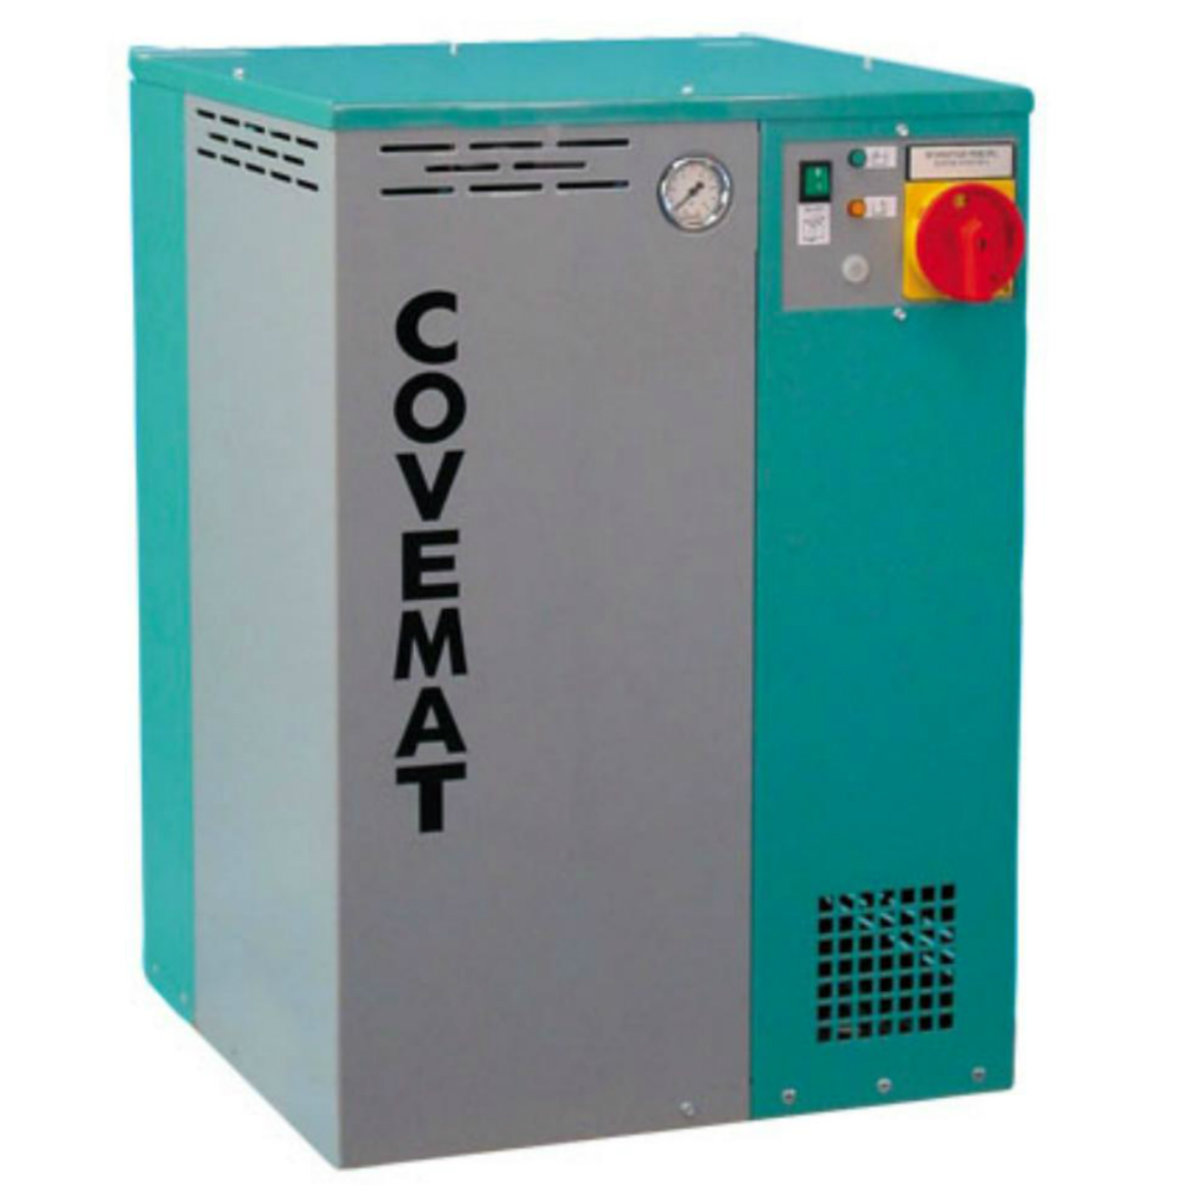 Générateur vapeur électrique à remplissage automatique, Puissance 17-34 kW - GE 620 - Covemat_0